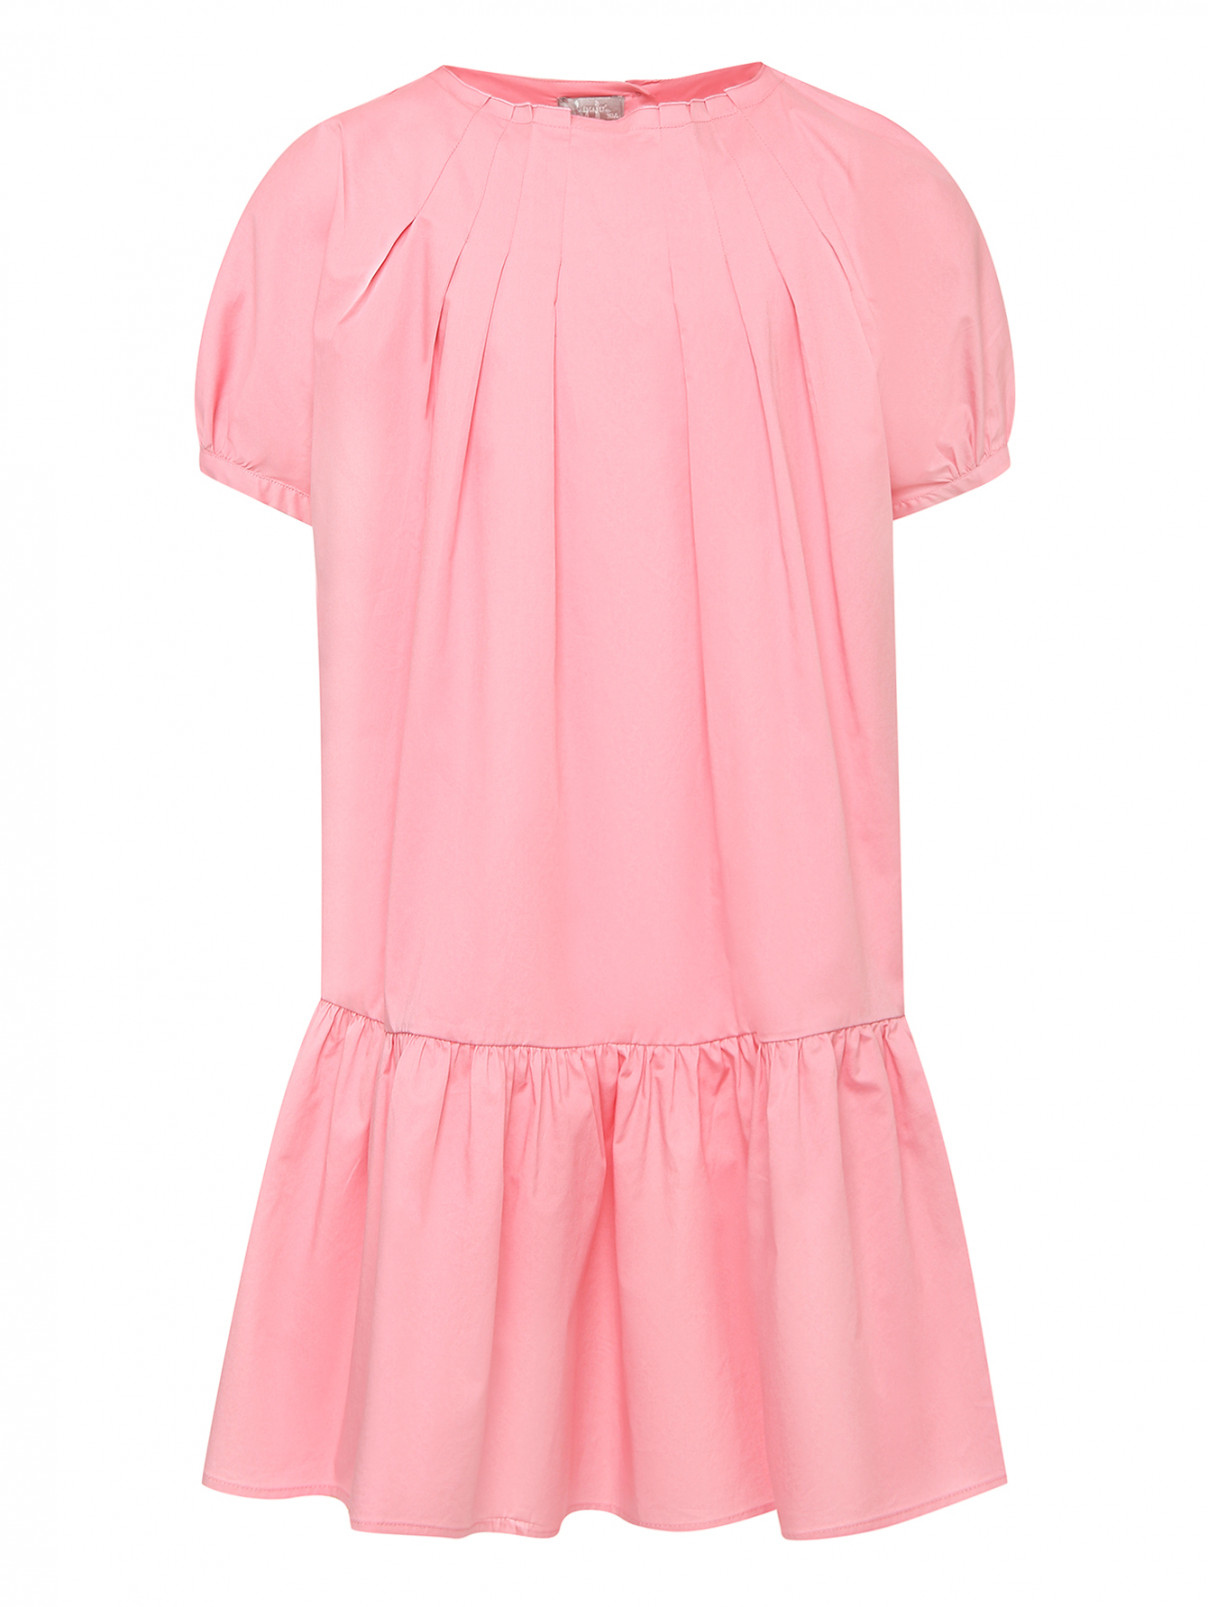 Хлопковое платье со складками Il Gufo  –  Общий вид  – Цвет:  Розовый